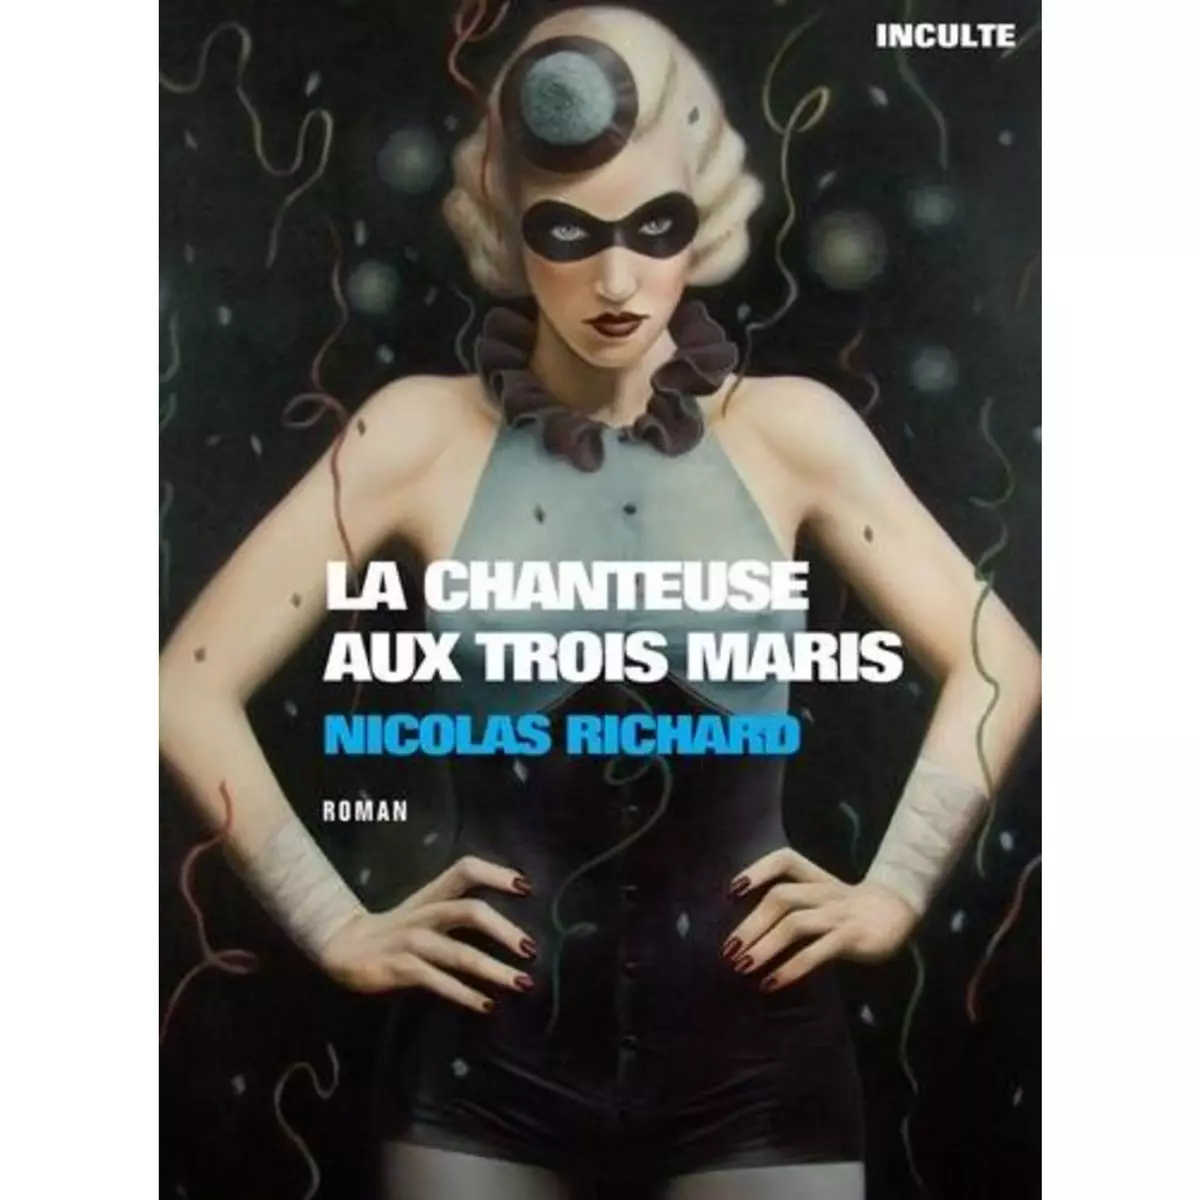  LA CHANTEUSE AUX TROIS MARIS, Richard Nicolas